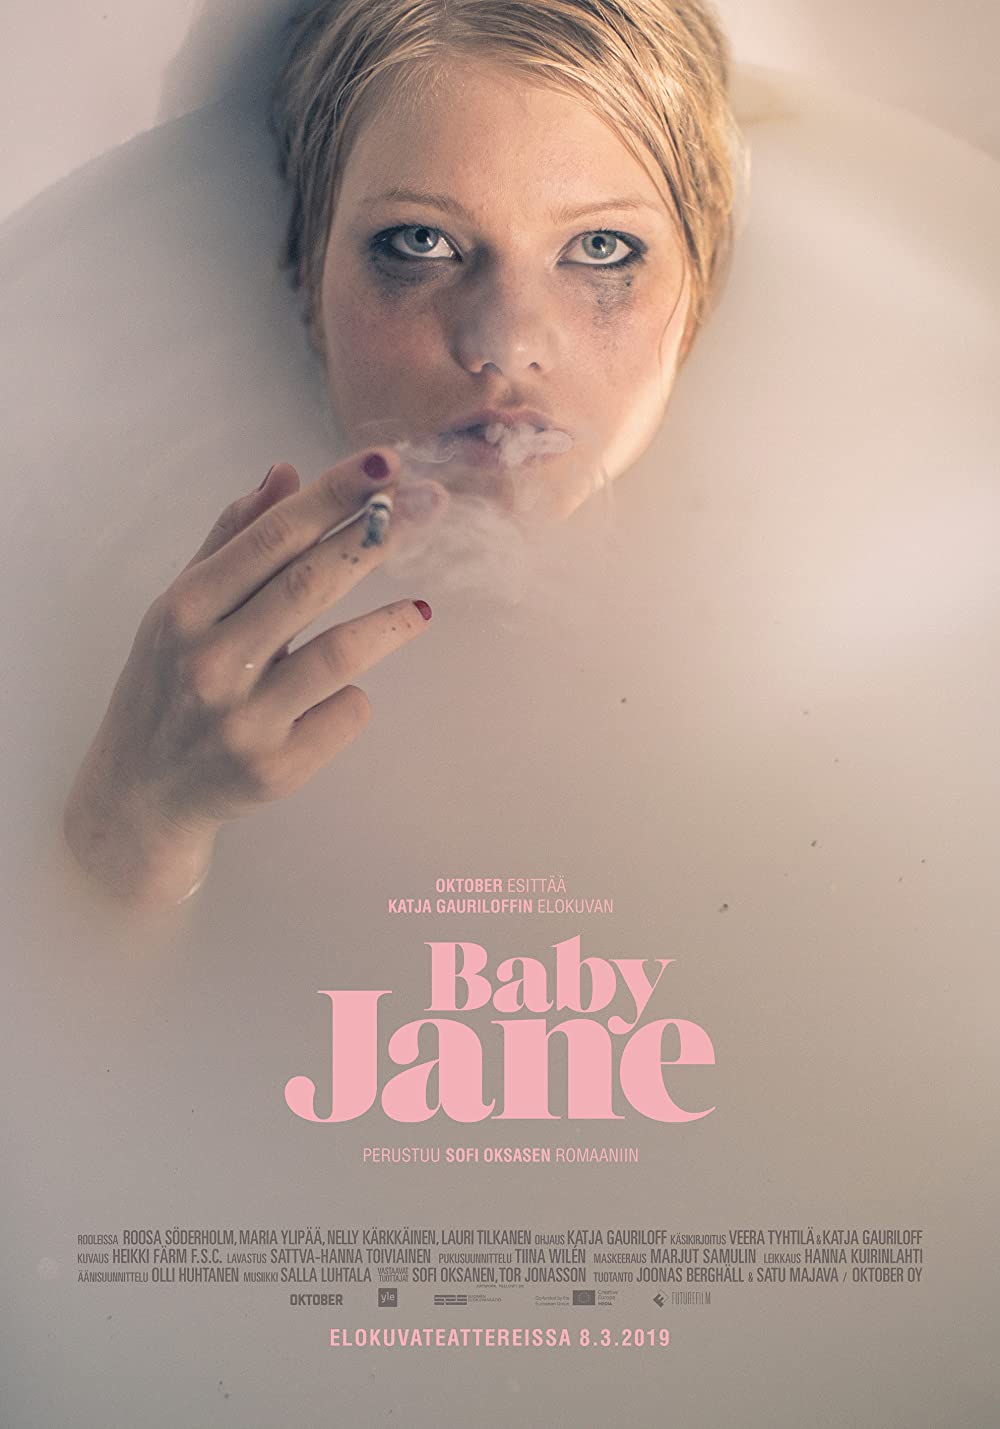 Filmbeschreibung zu Baby Jane (OV)